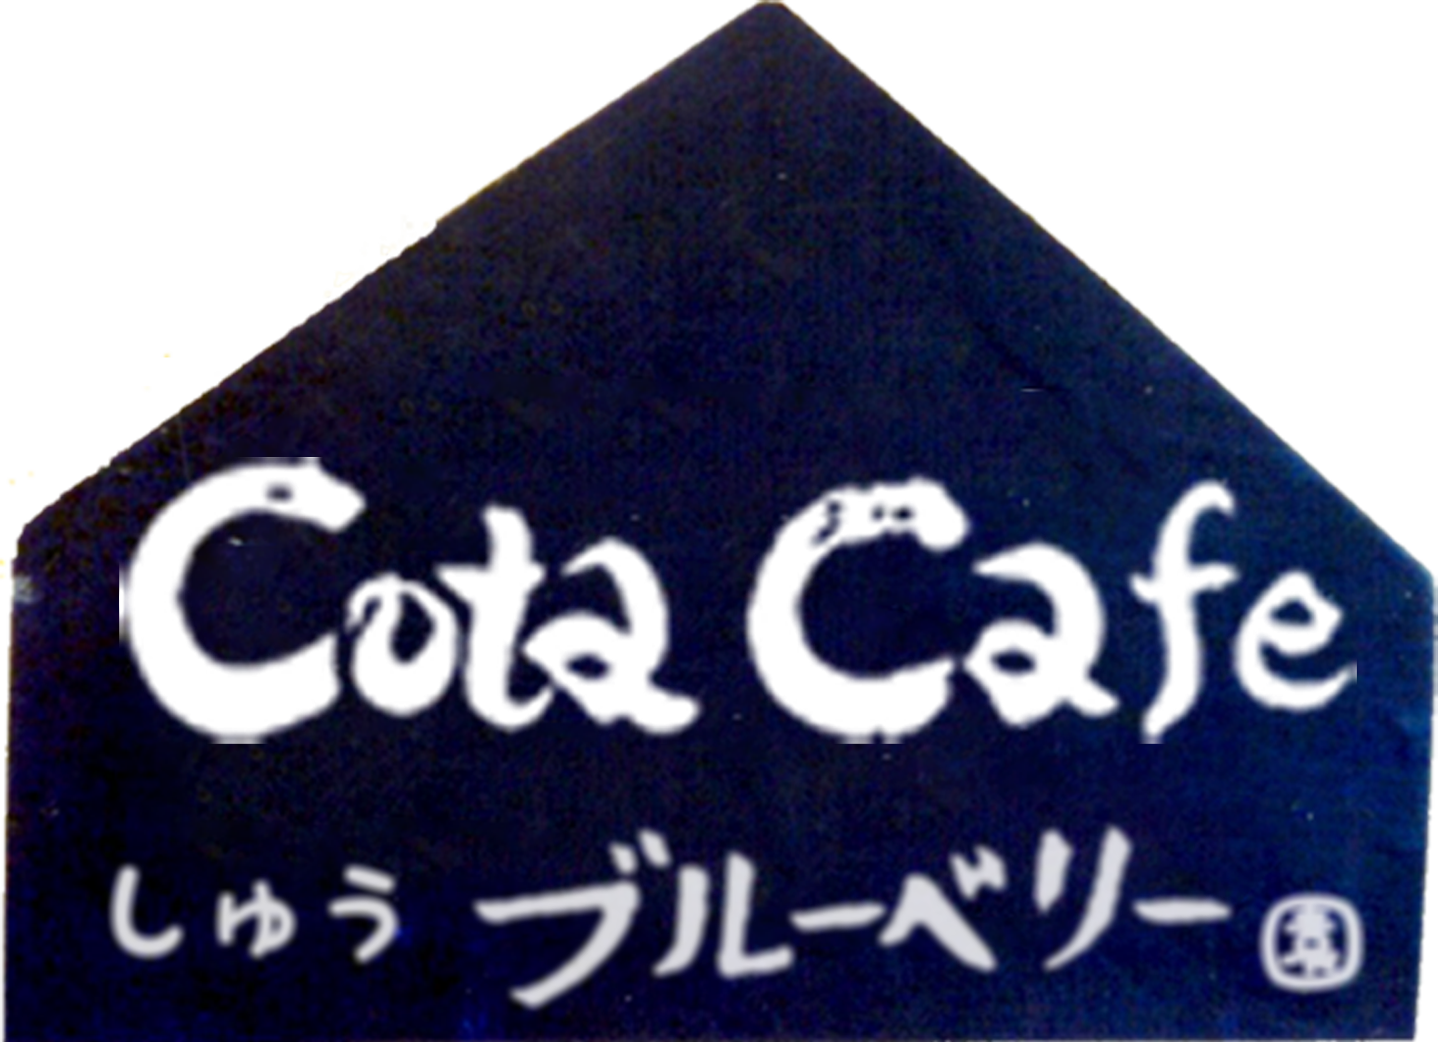 Cota Cafe（コタカフェ）｜しゅうブルーベリー園